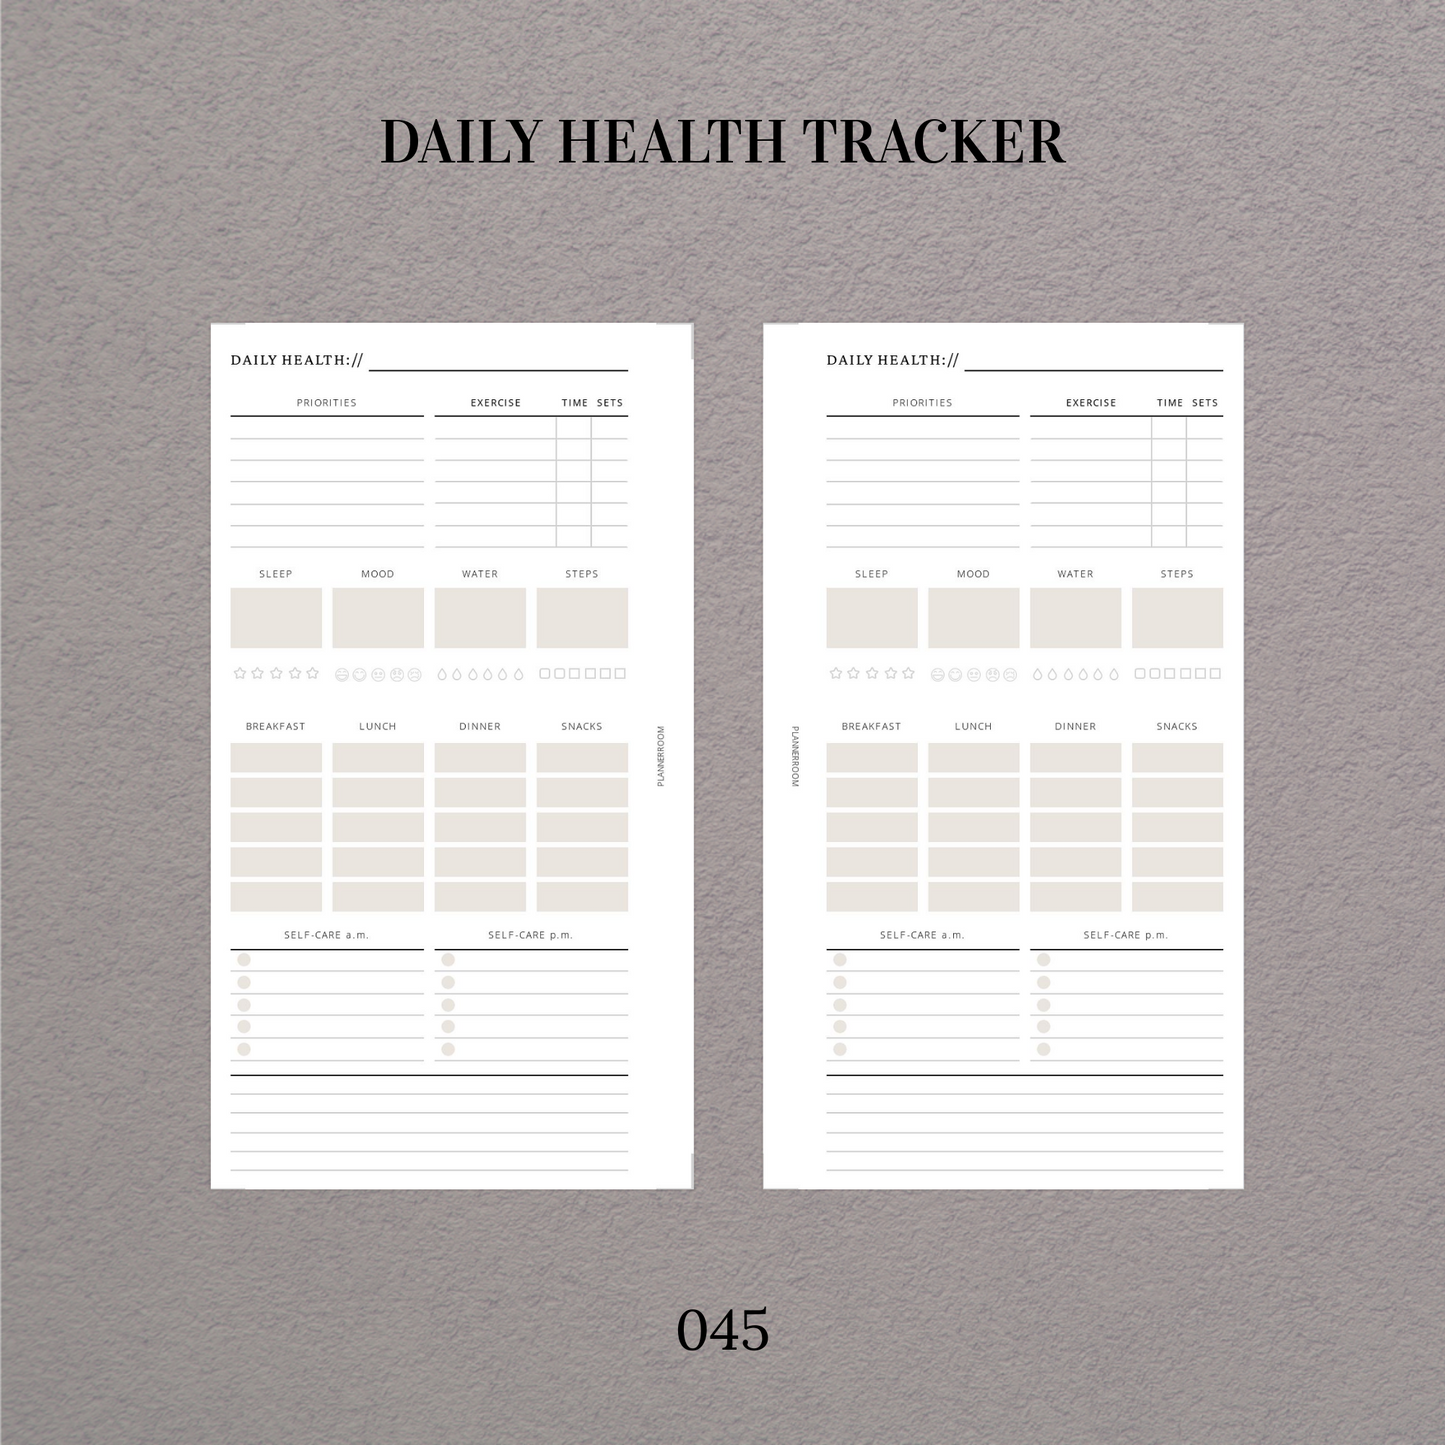 Daily health tracker - 045